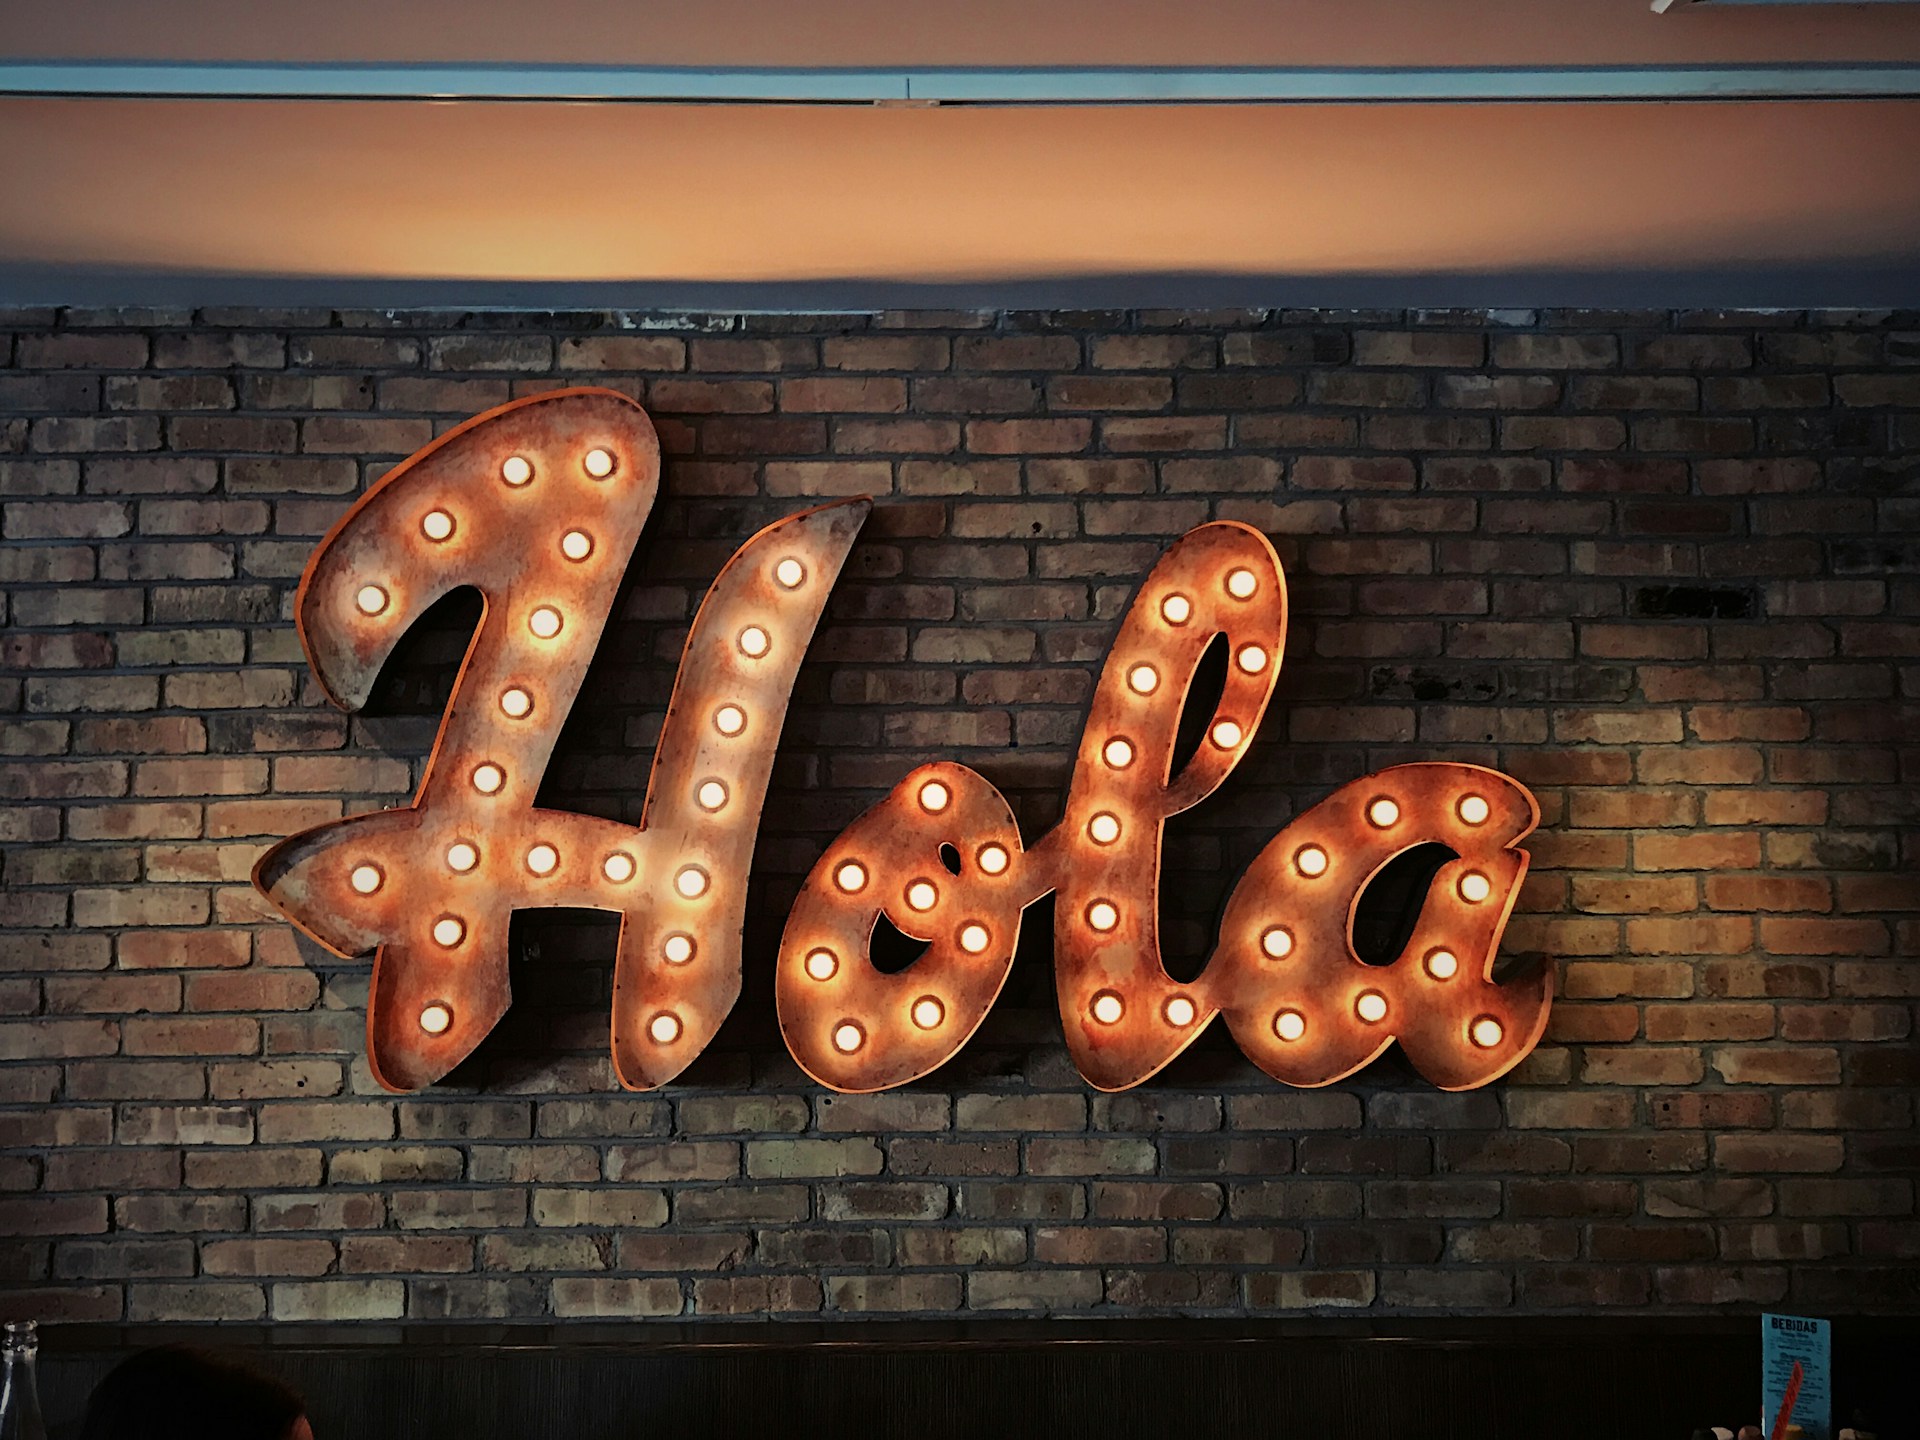 На кирпичной стене есть большая светящаяся вывеска, где написано “Hola”.